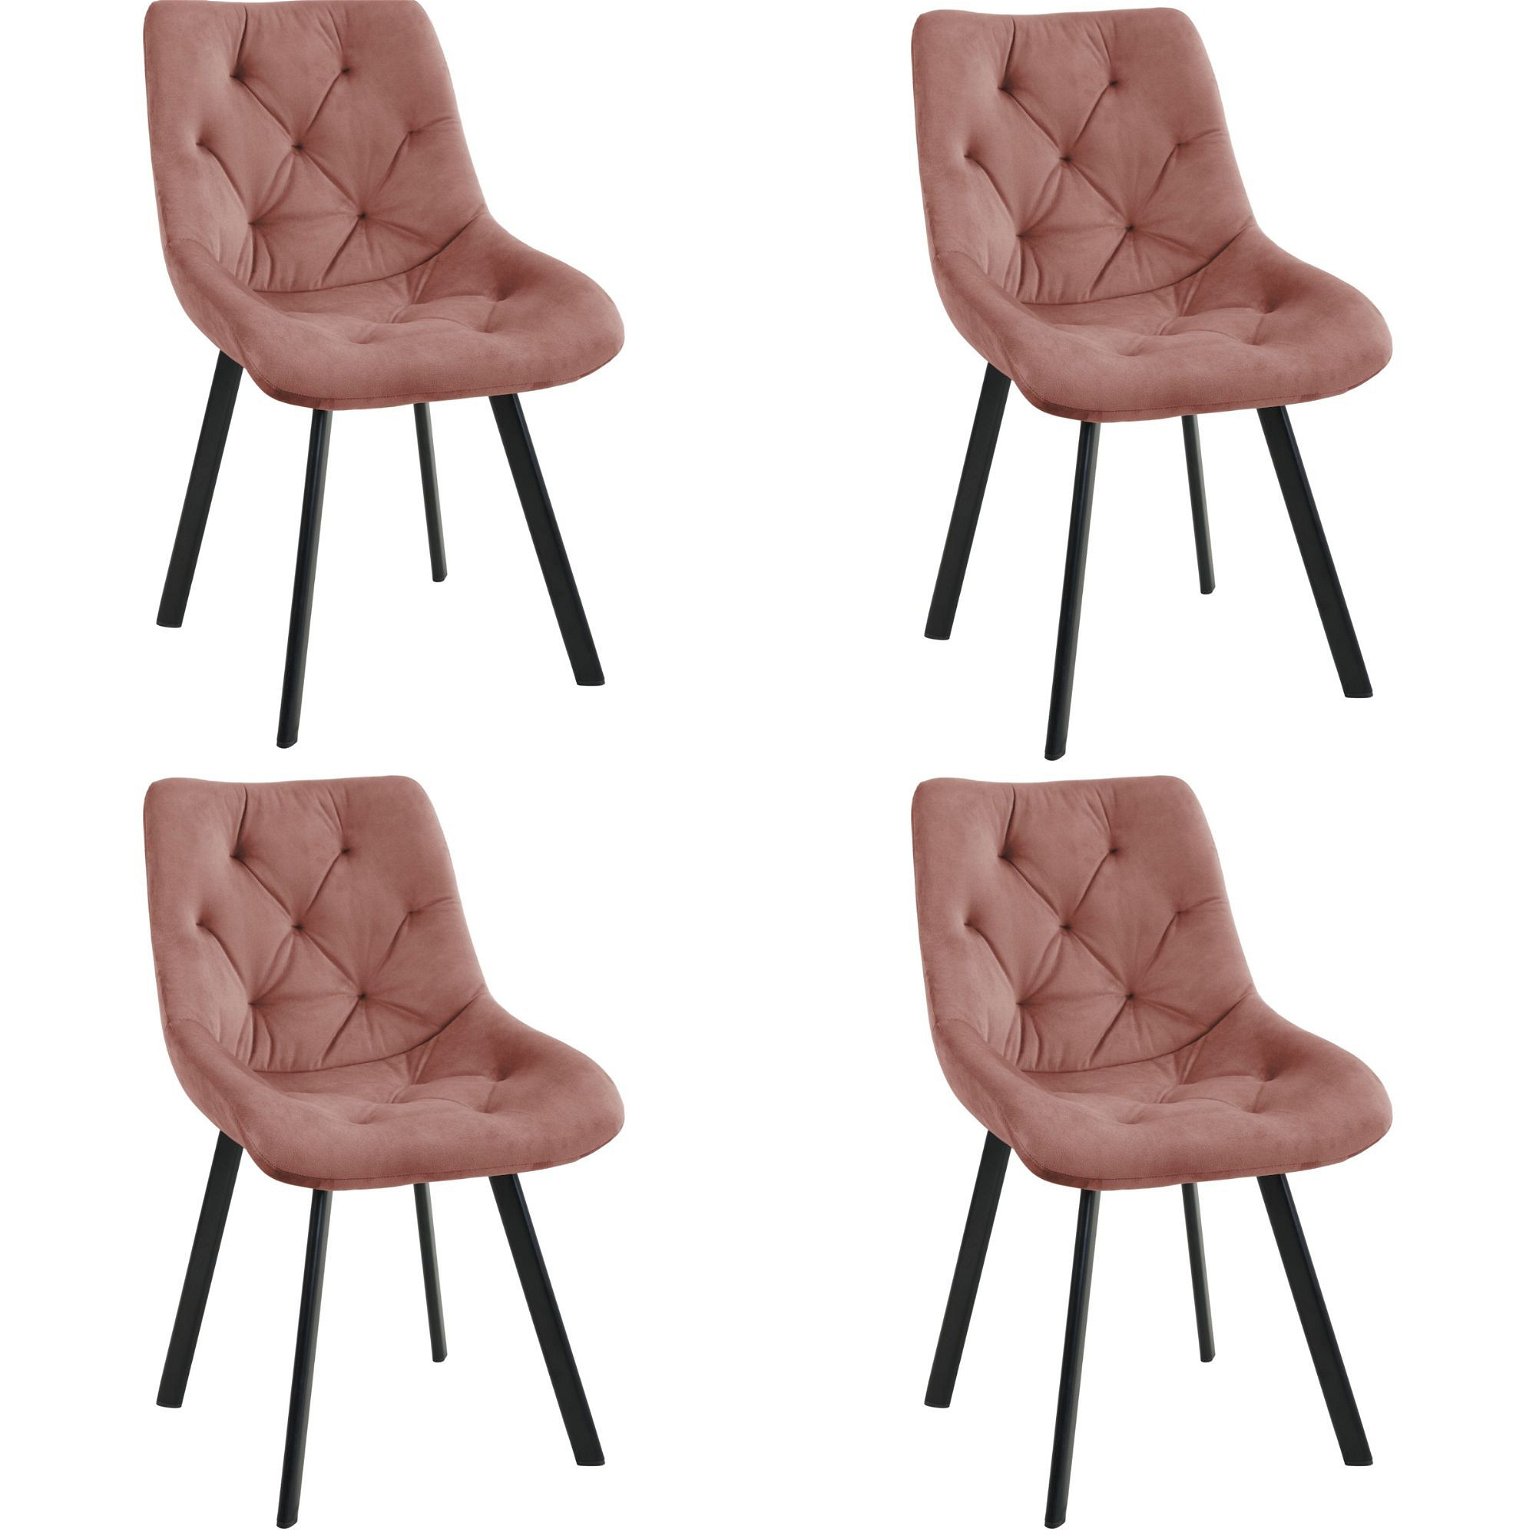 4-ių kėdžių komplektas SJ.33, rožinė